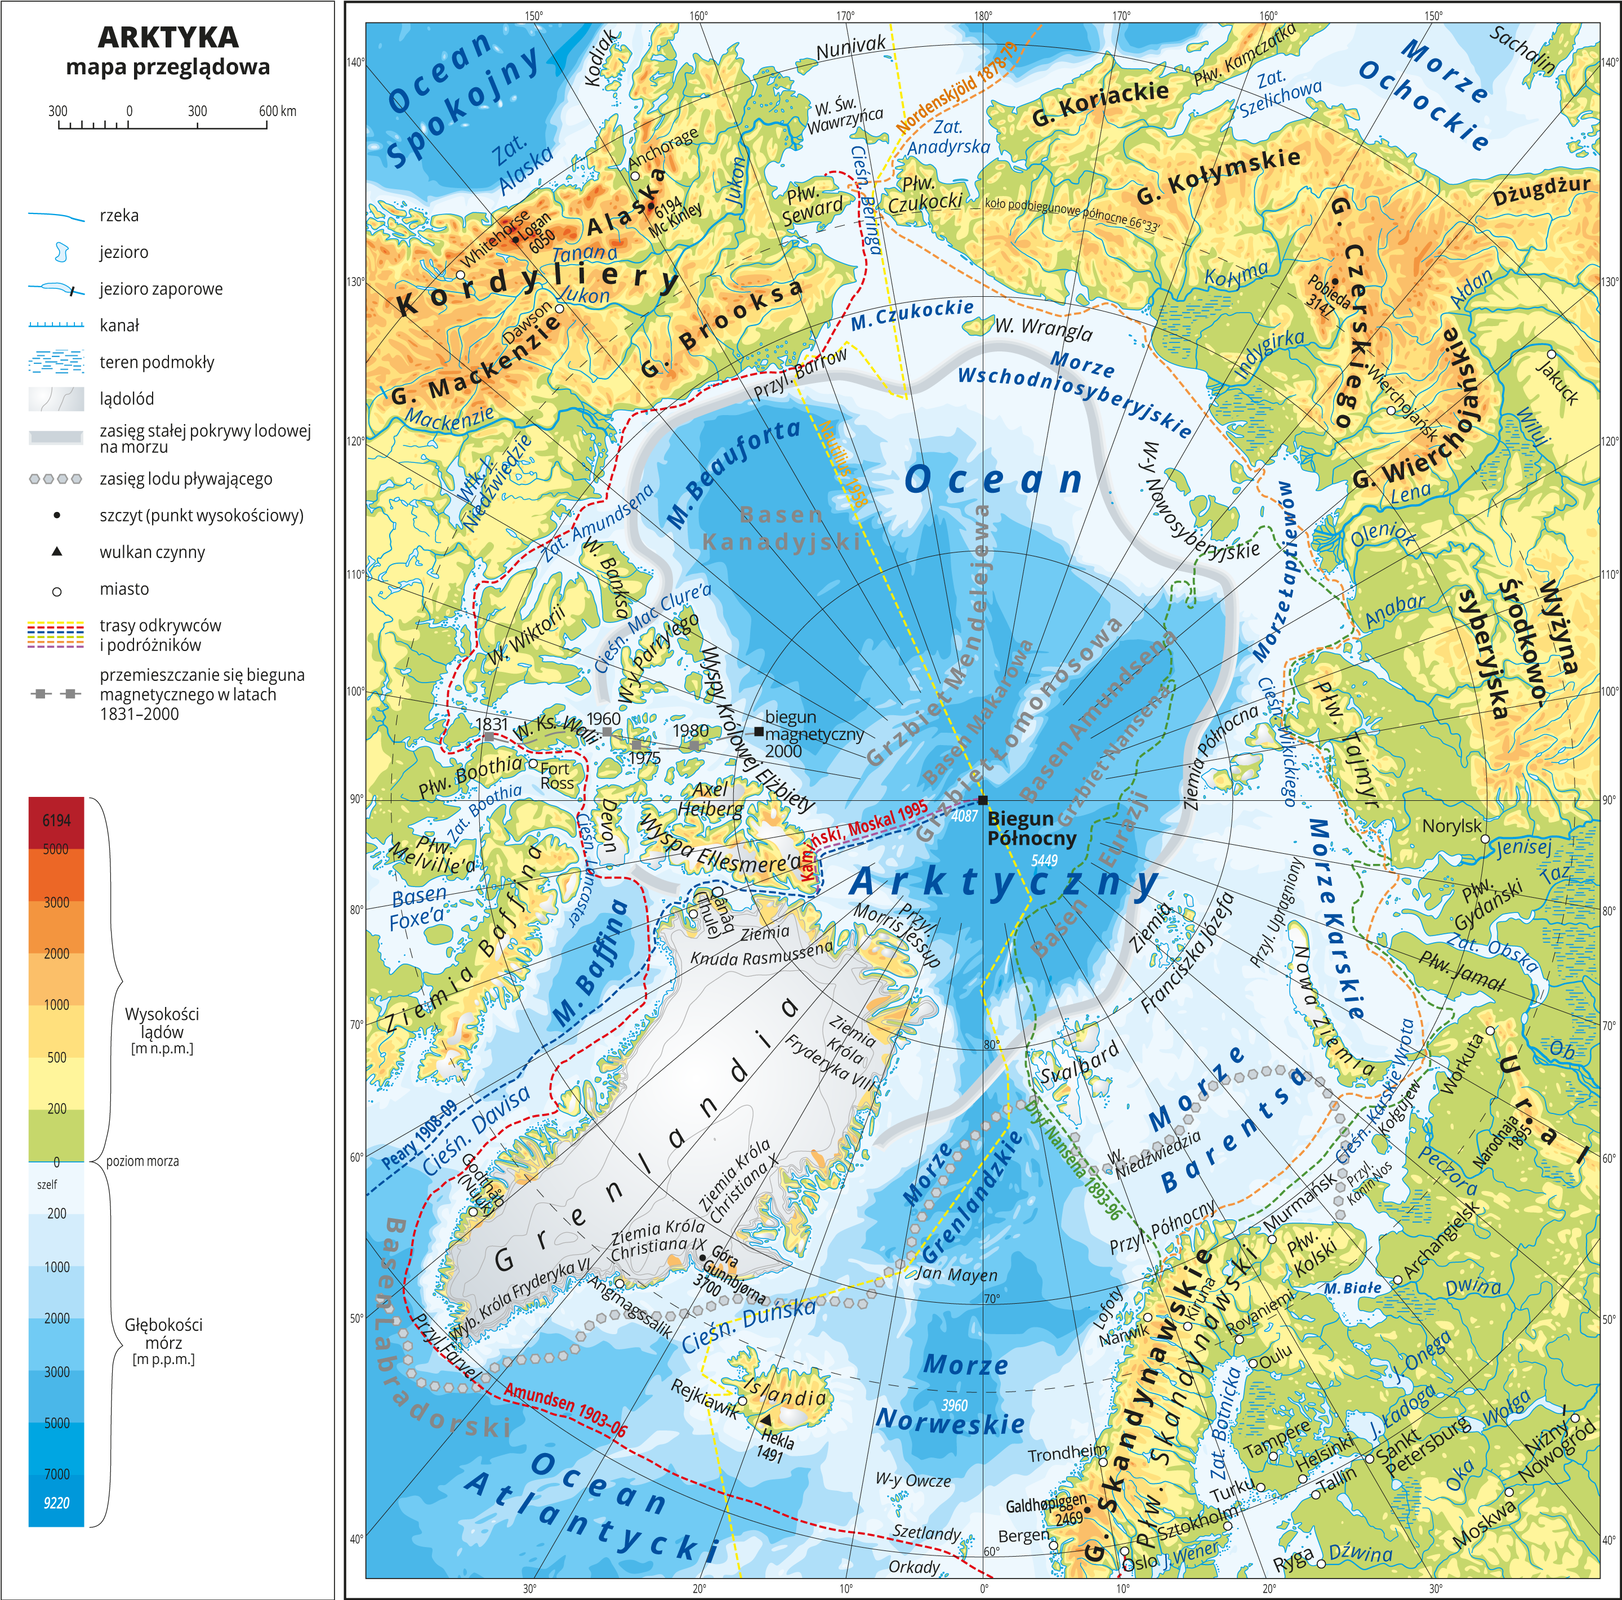 Ilustracja przedstawia mapę przeglądową Arktyki. W obrębie lądów występują obszary w kolorze zielonym, żółtym, pomarańczowym i czerwonym. Morza zaznaczono sześcioma odcieniami koloru niebieskiego. Na mapie opisano nazwy wysp, półwyspów, głównych nizin, wyżyn i pasm górskich, mórz, zatok, rzek i jezior. Oznaczono i opisano główne miasta. Oznaczono czarnymi kropkami i opisano szczyty górskie. Mapa pokryta jest równoleżnikami i południkami. Dookoła mapy w białej ramce opisano południki i równoleżniki co dziesięć stopni. W legendzie umieszczono i opisano znaki użyte na mapie.